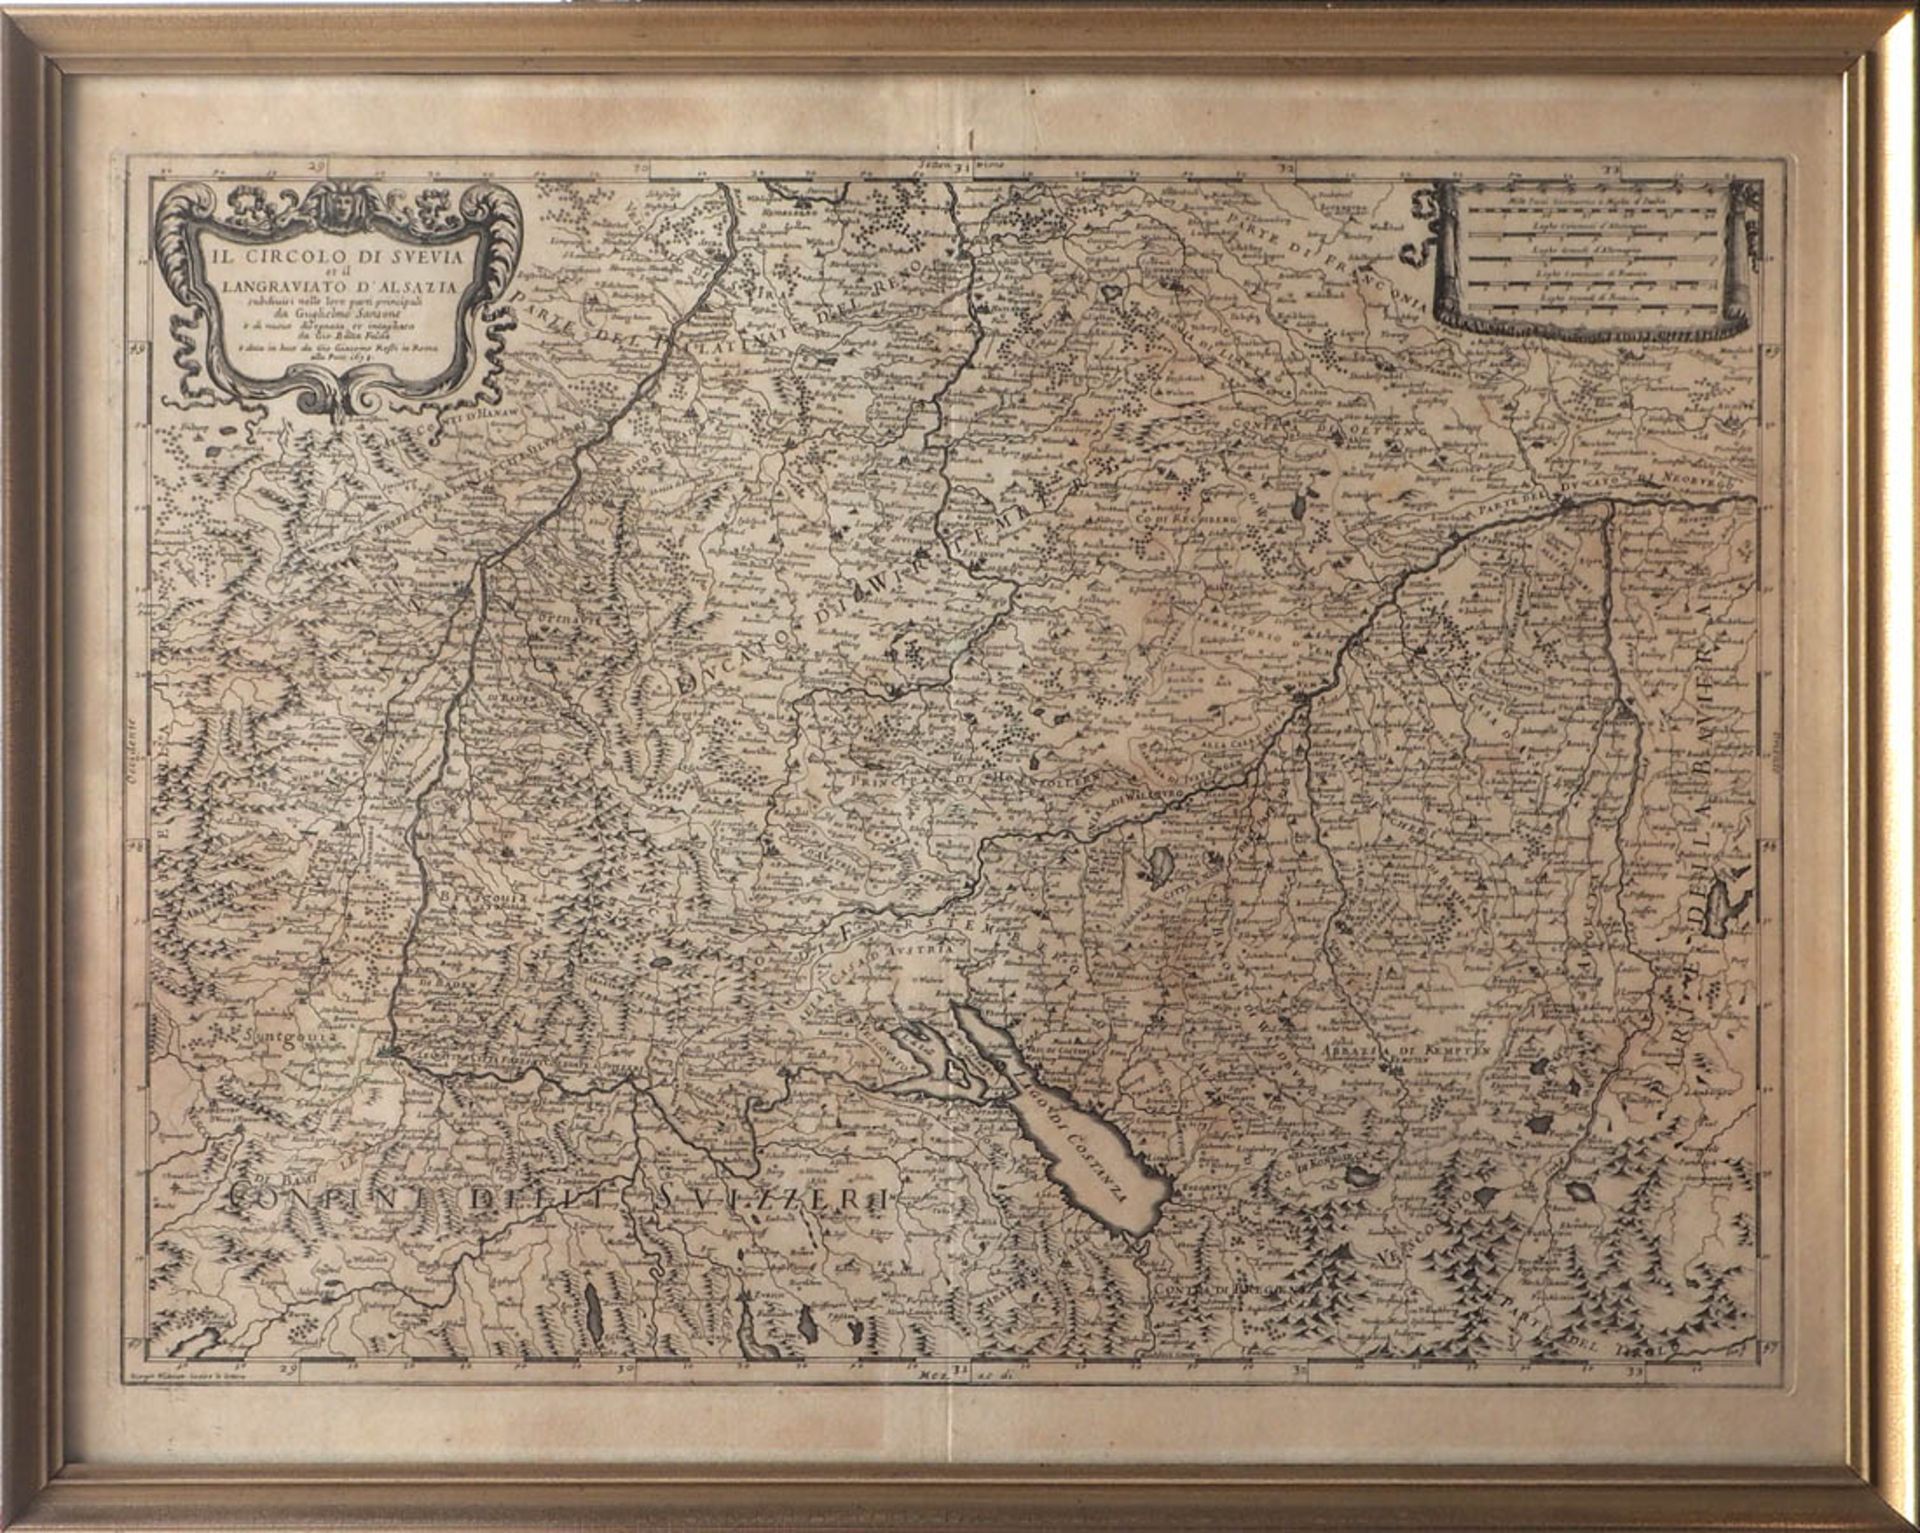 Falda, Giovanni Battista, 1648 - 1678 Landkarte von Süddeutschland, Teilen des Elsass und der